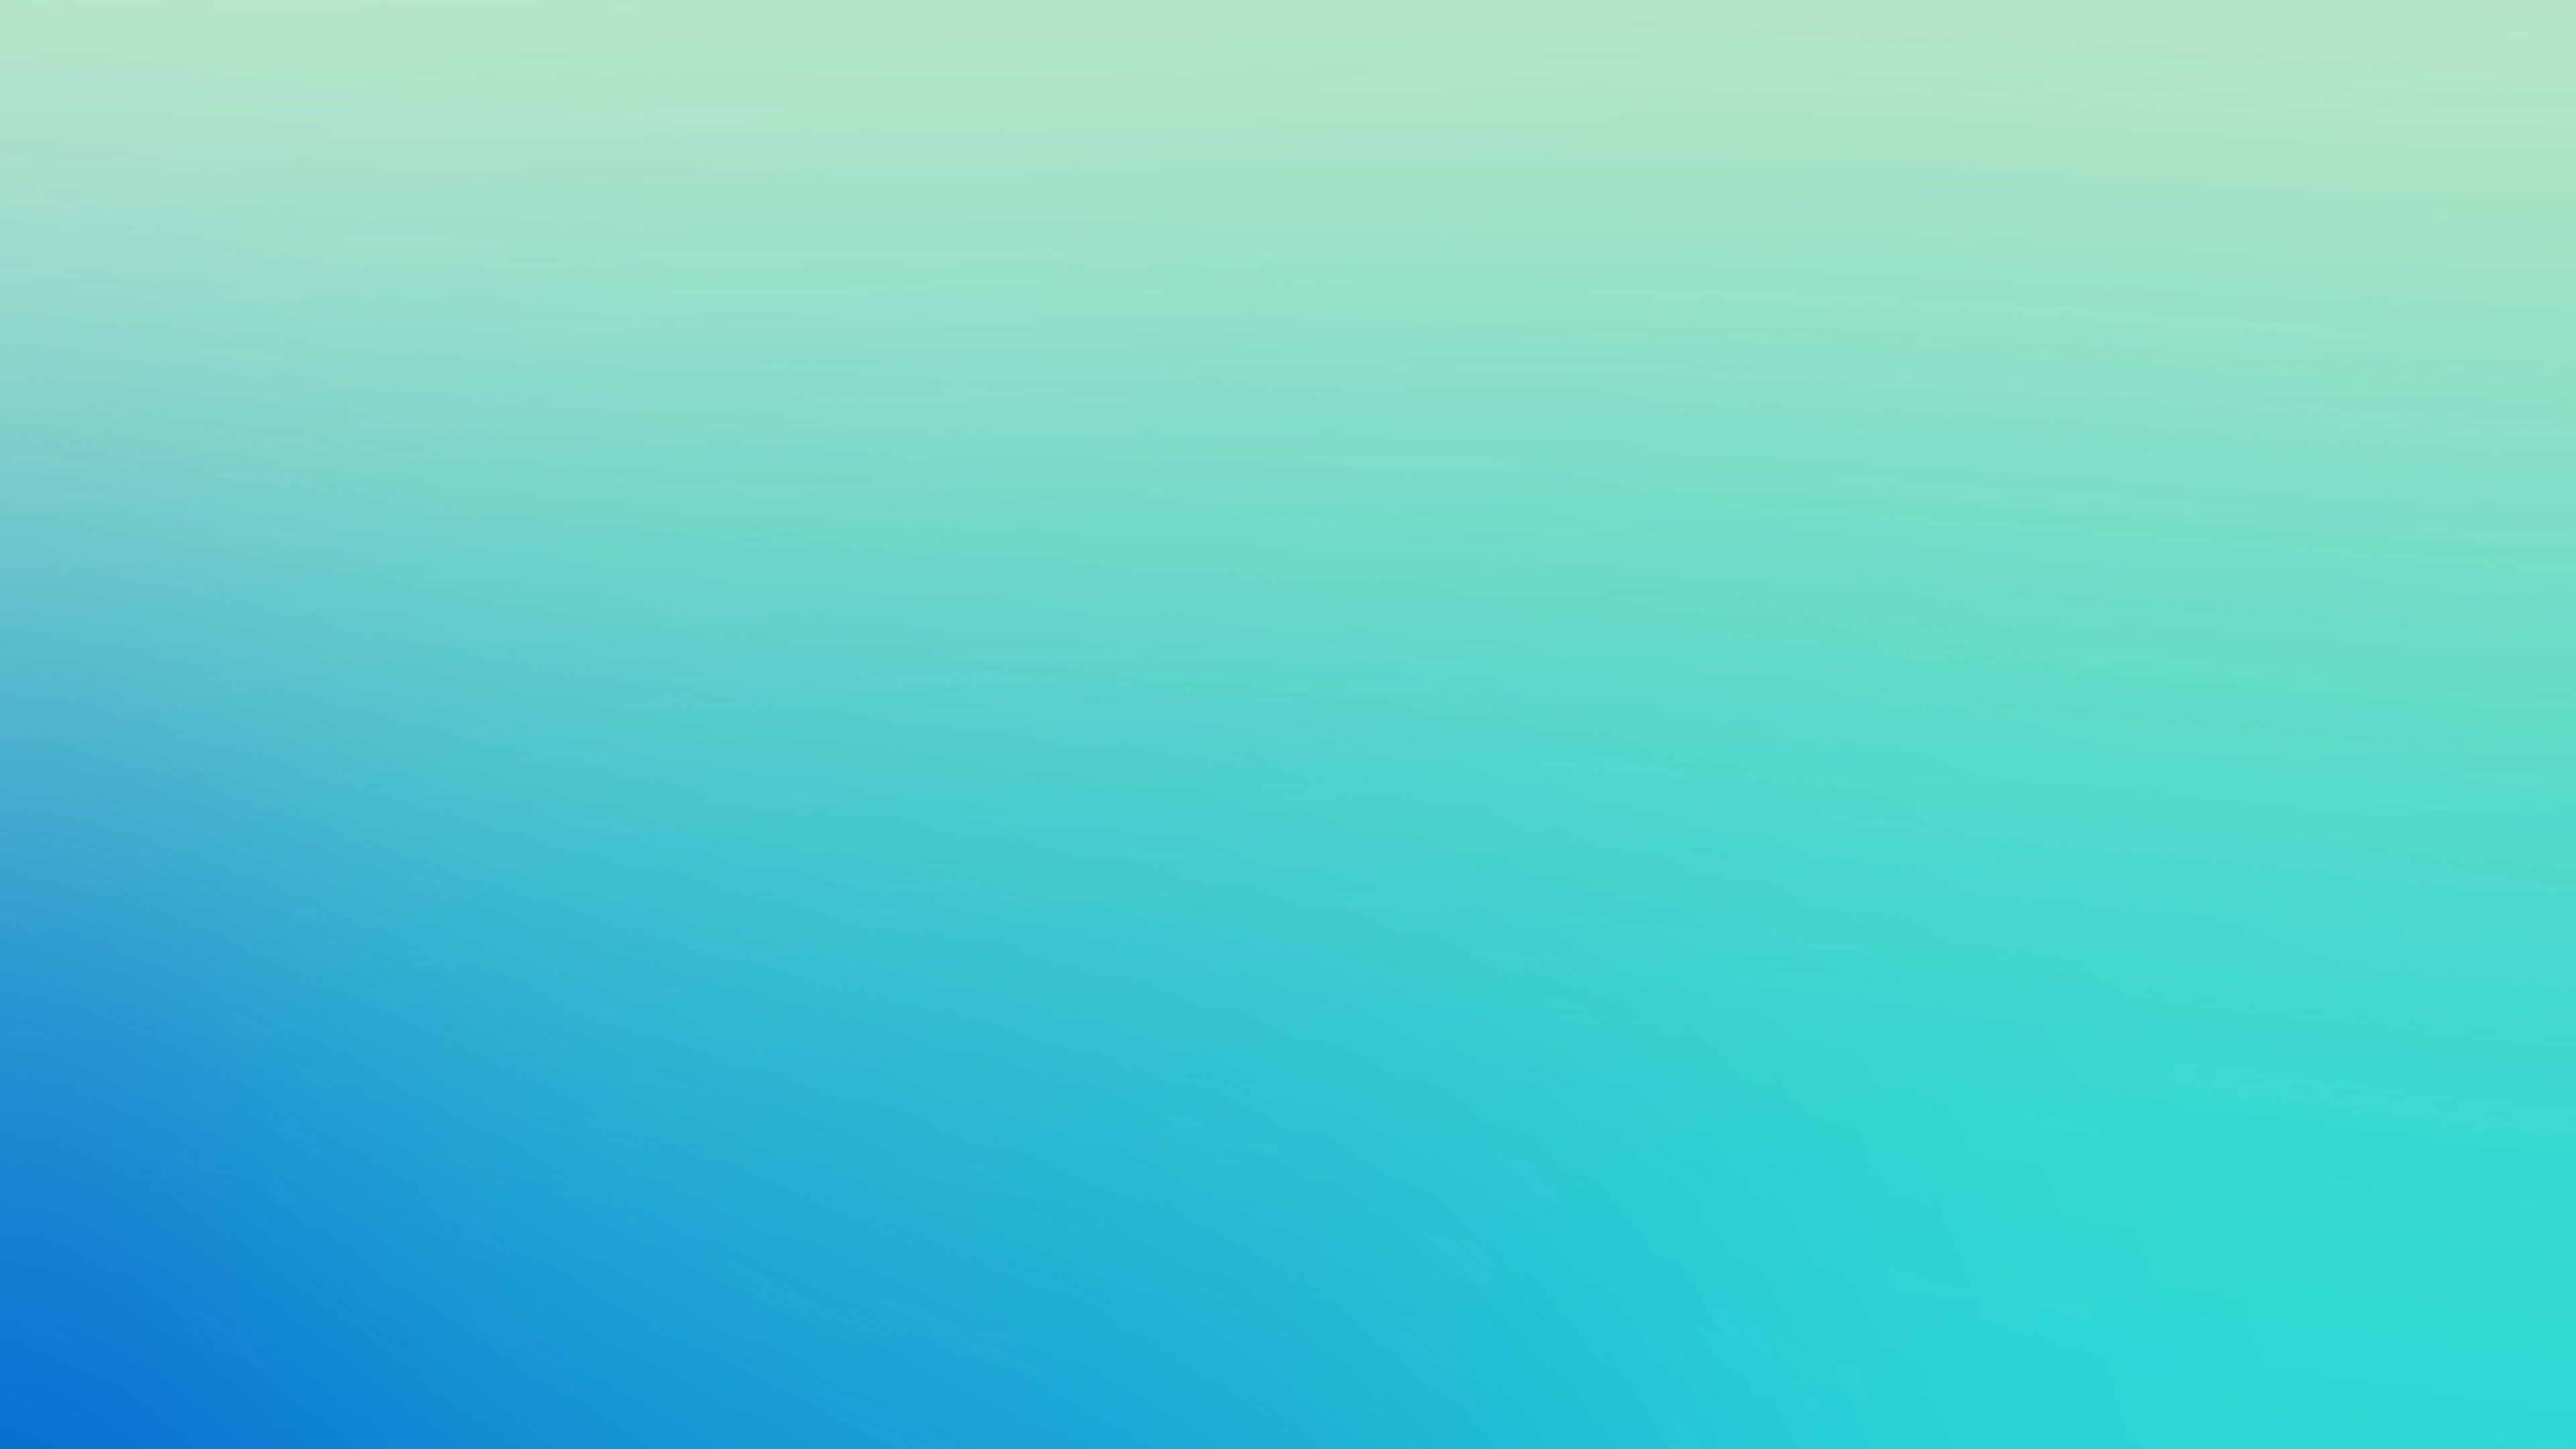 Bộ sưu tập hình nền đẹp mắt với màu sắc xanh tươi mát - Pure Blue 4K Wallpapers - sẽ khiến bạn cảm thấy thoải mái và dễ chịu hơn trong quá trình làm việc hay học tập. Chất lượng hình ảnh 4K sẽ làm nổi bật khoảnh khắc đẹp nhất của bạn.